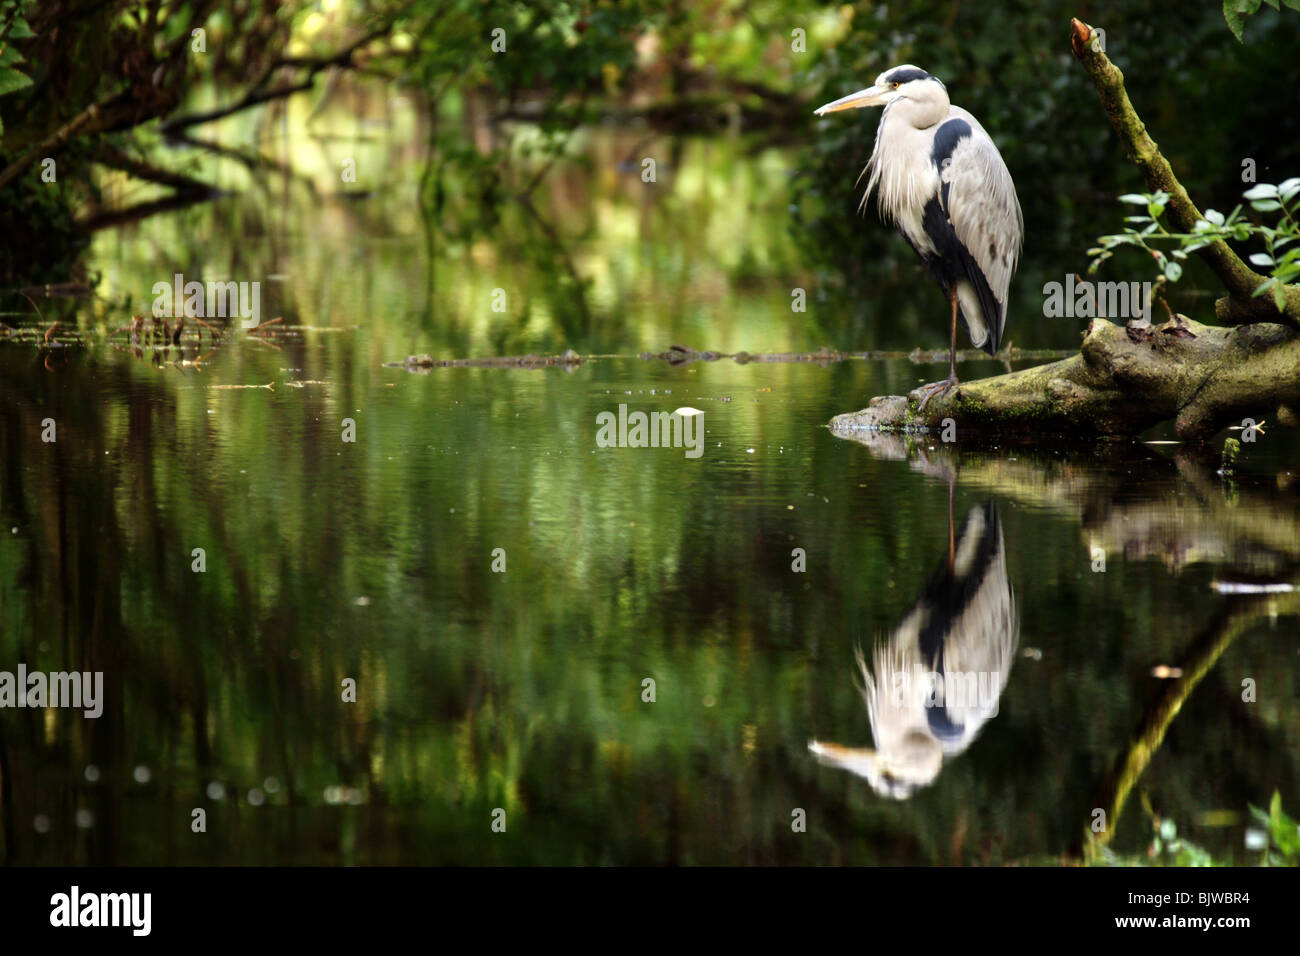 Great Blue Heron Vogel stehende Seite des Wasser-Teich unter Bäumen Reflexion glatt noch Oberfläche grünes Licht spiegelt sich auf den Kopf gestellt Stockfoto